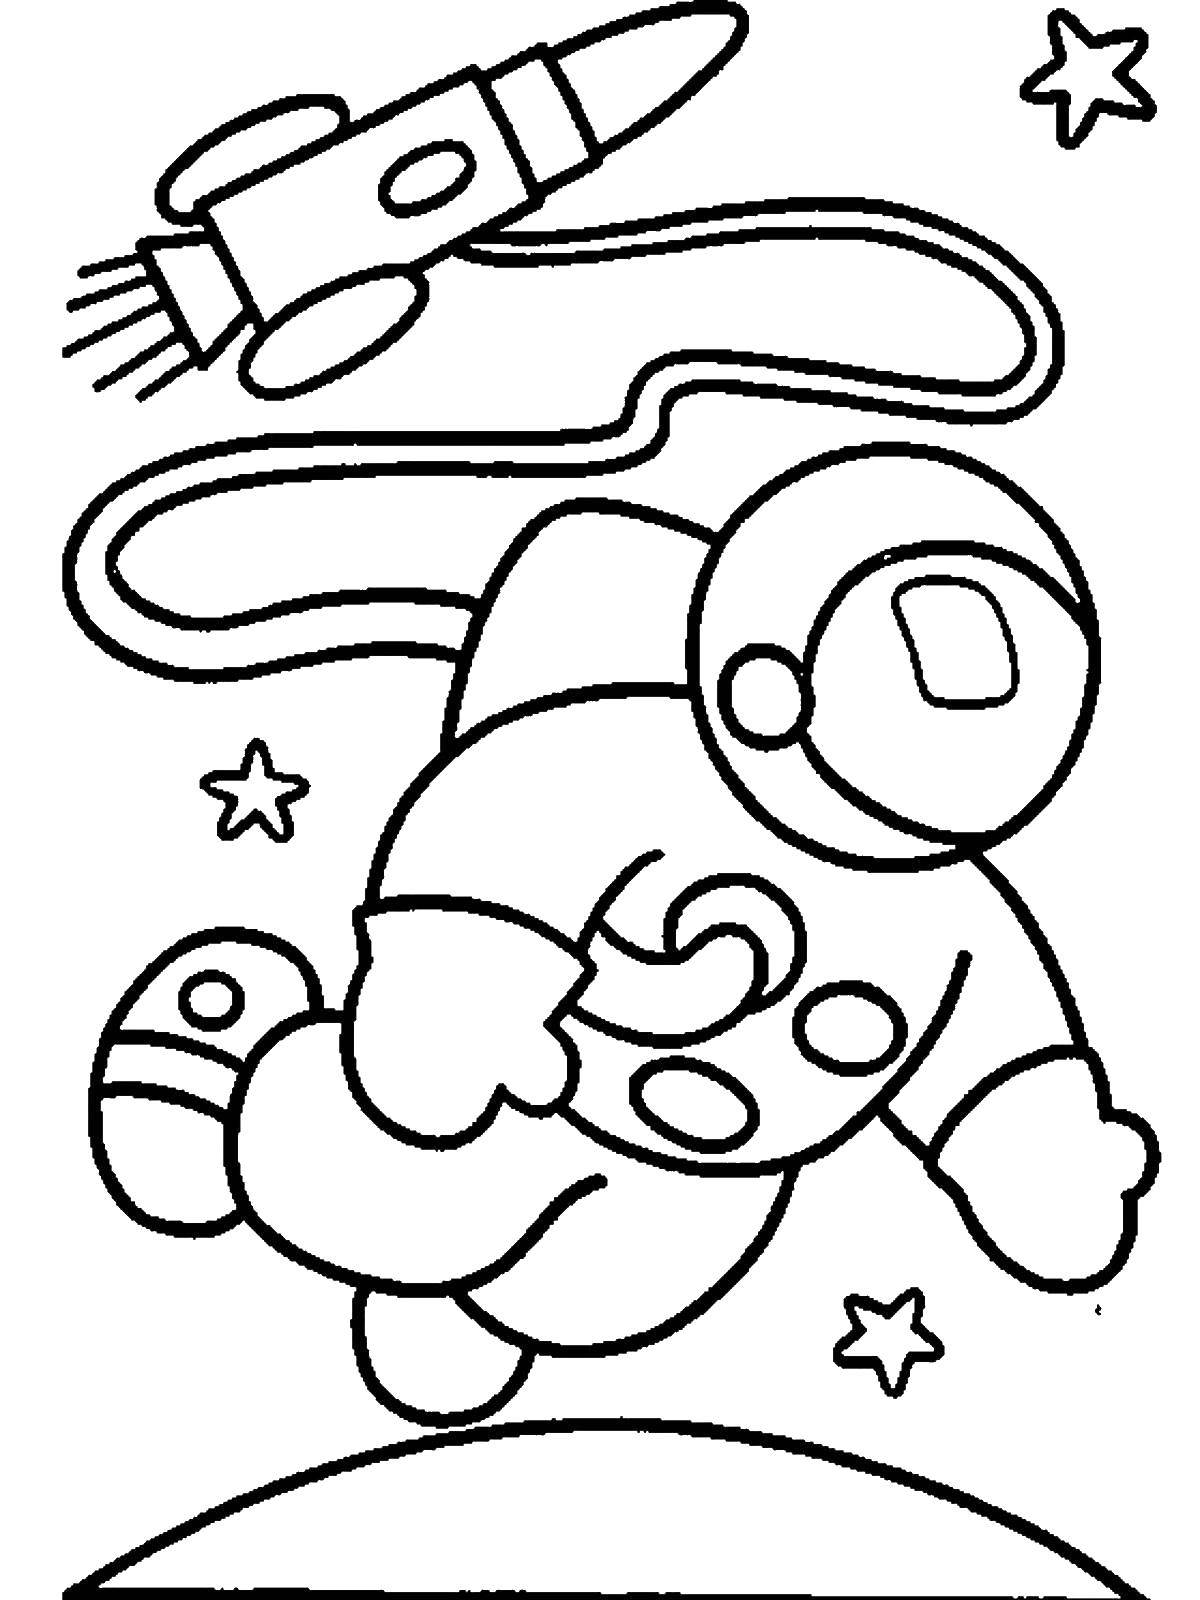 Детские раскраски ко дню космонавтики. Космос раскраска для детей. Раскраска. В космосе. Космонавт раскраска для детей. Раскраска на тему космос для детей.